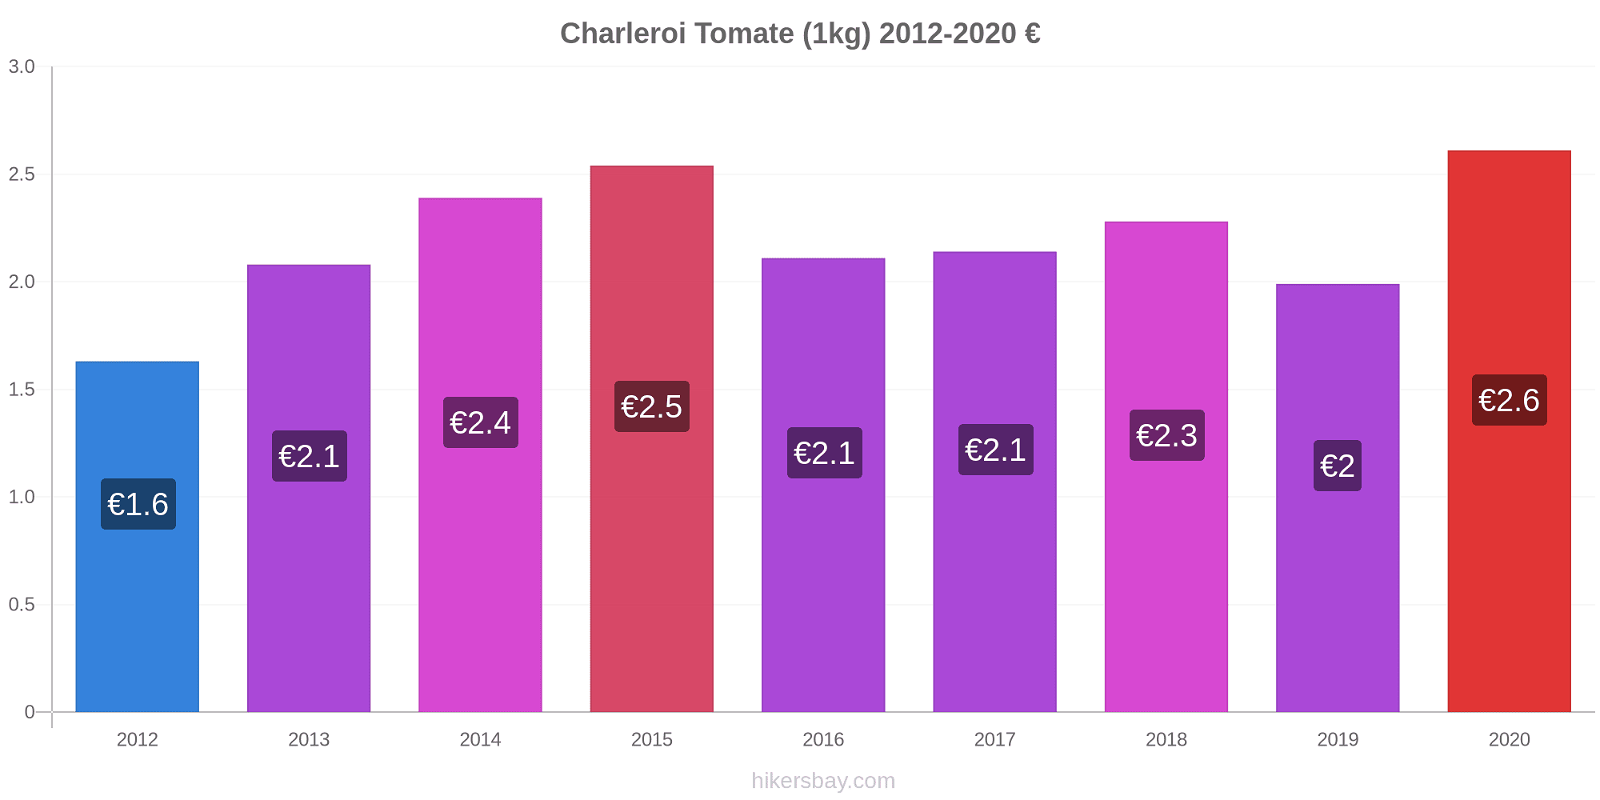 Charleroi cambios de precios Tomate (1kg) hikersbay.com